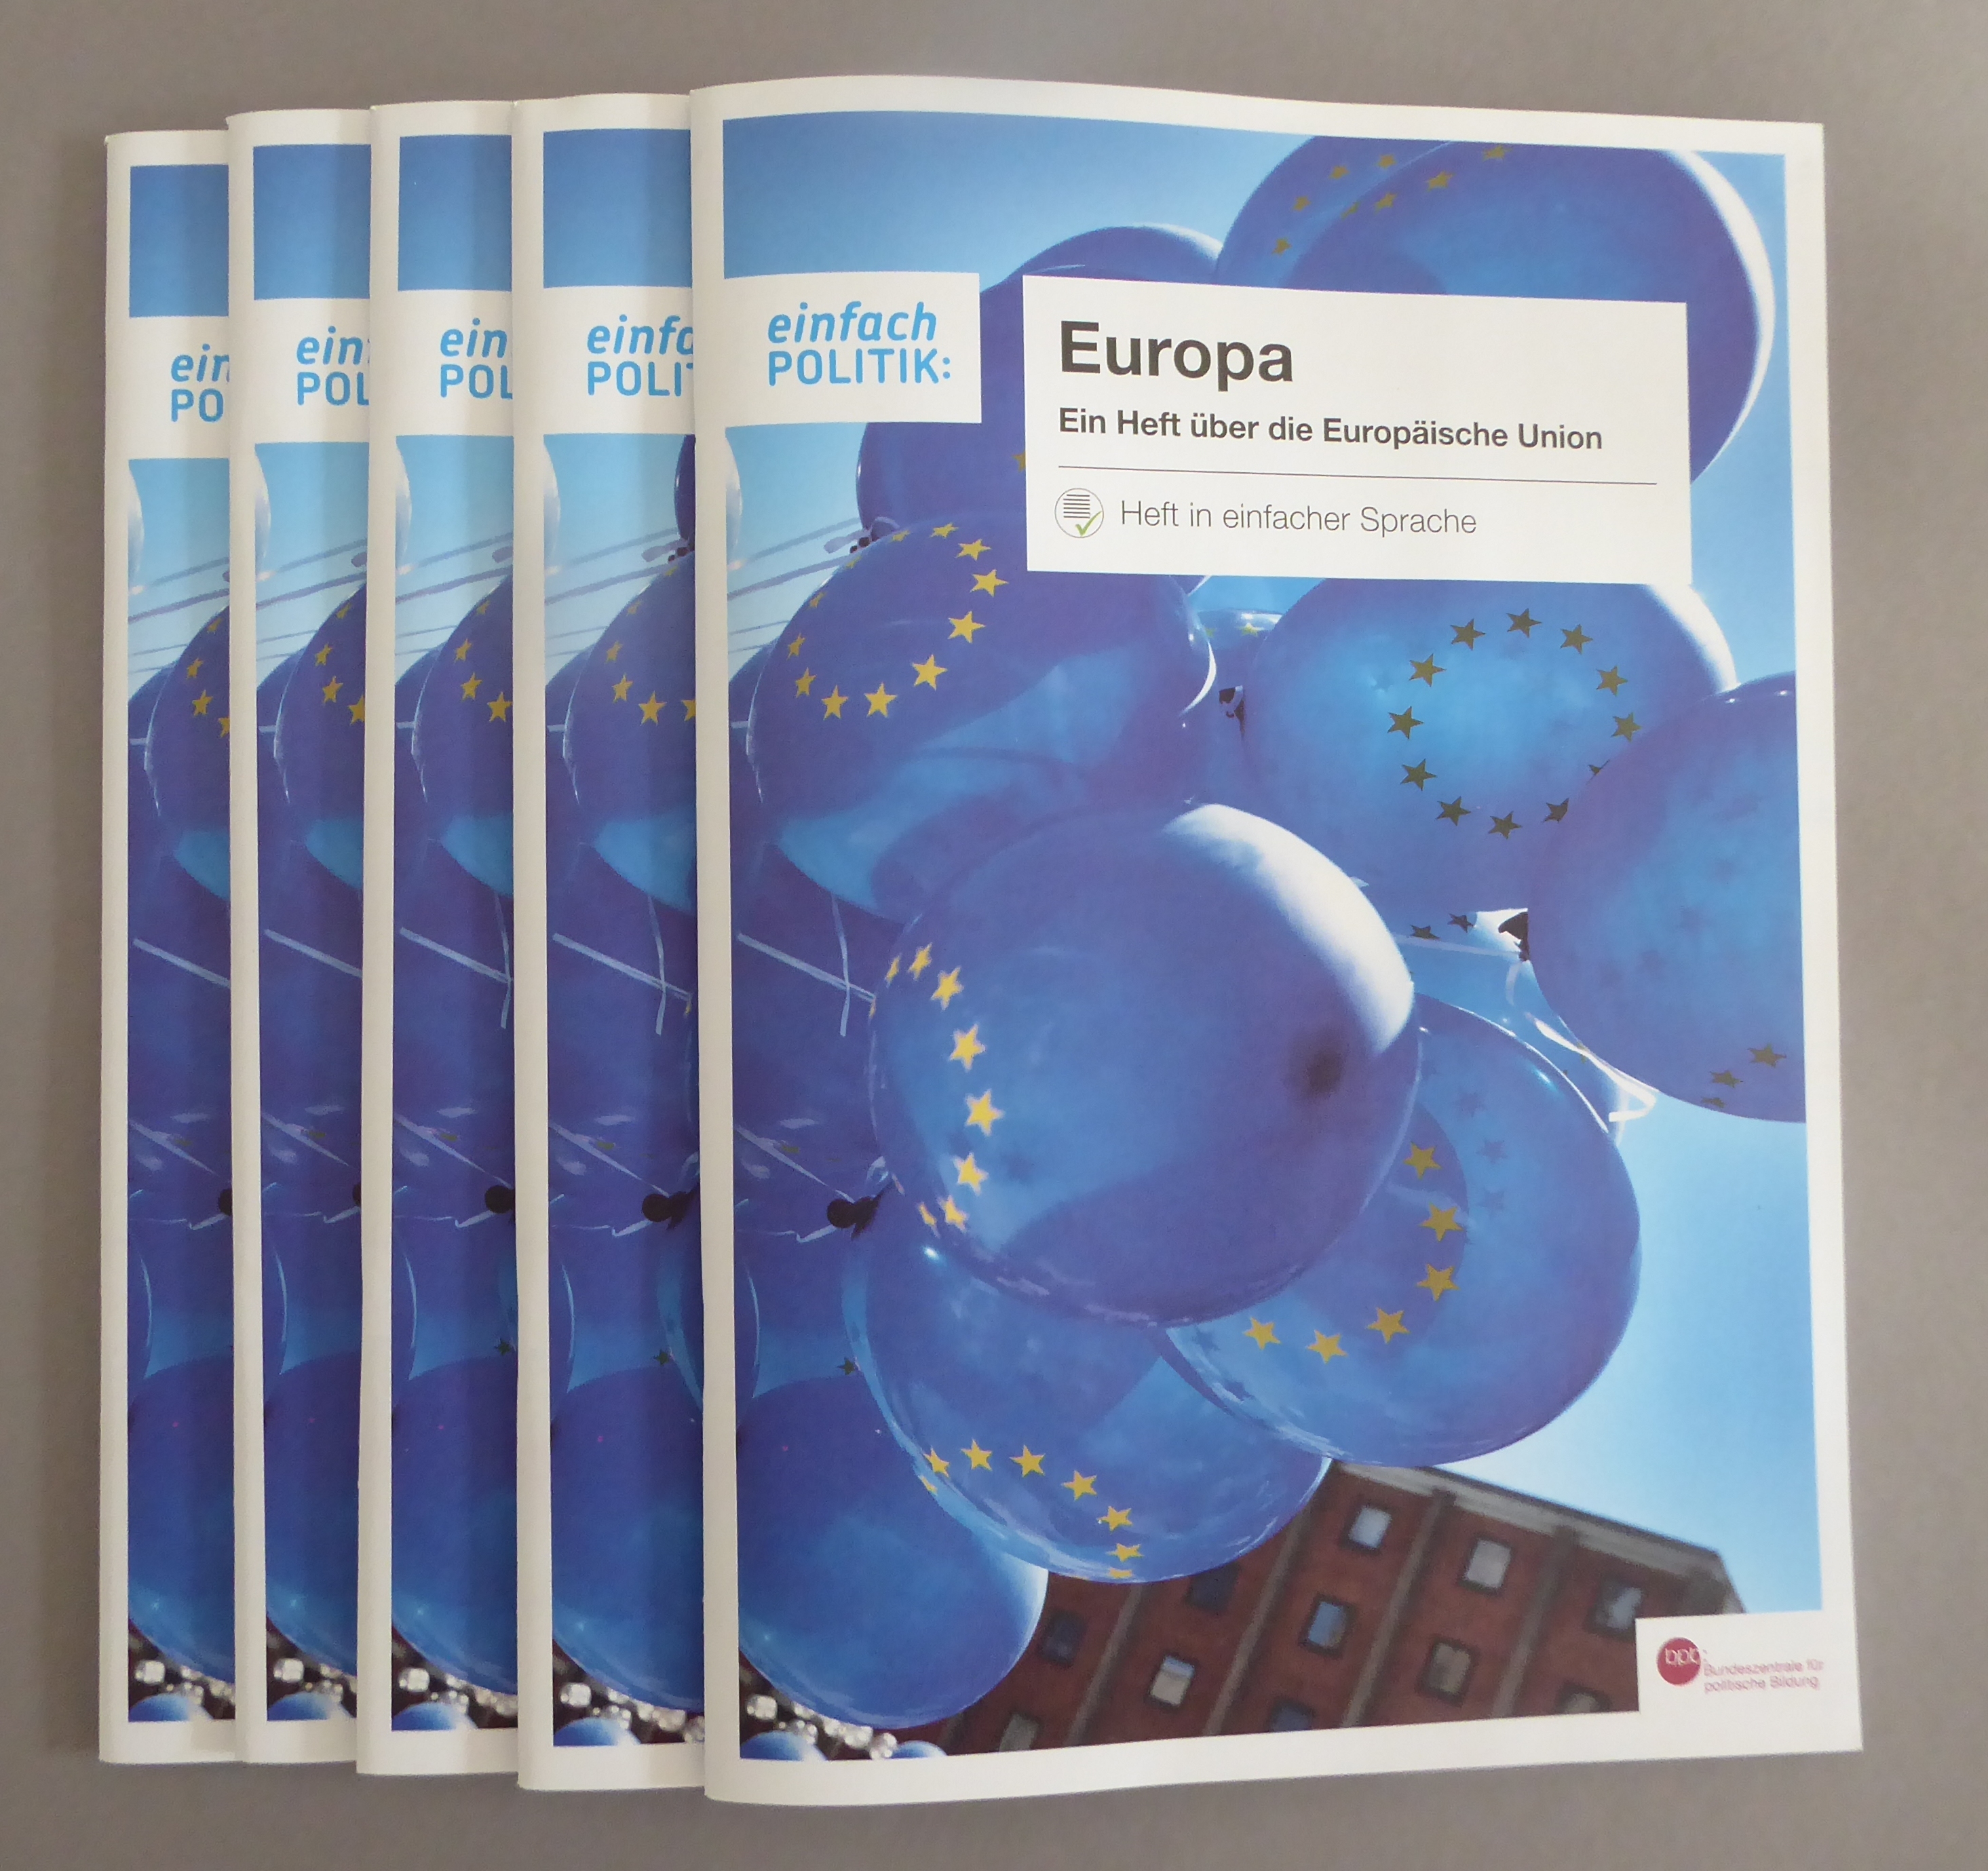 Die Broschüre "einfach Politik: Europa"